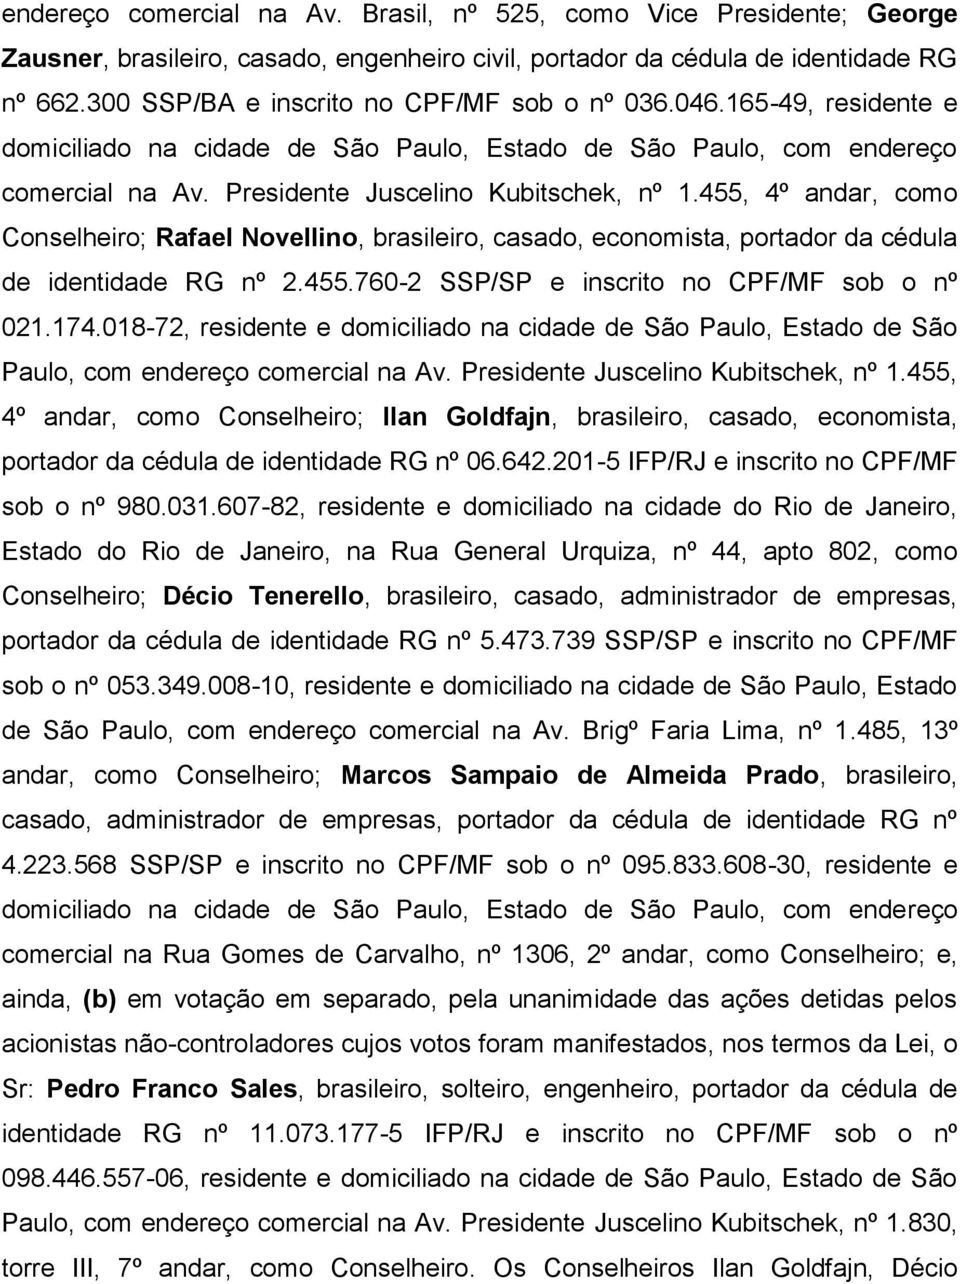 455, 4º andar, como Conselheiro; Rafael Novellino, brasileiro, casado, economista, portador da cédula de identidade RG nº 2.455.760-2 SSP/SP e inscrito no CPF/MF sob o nº 021.174.